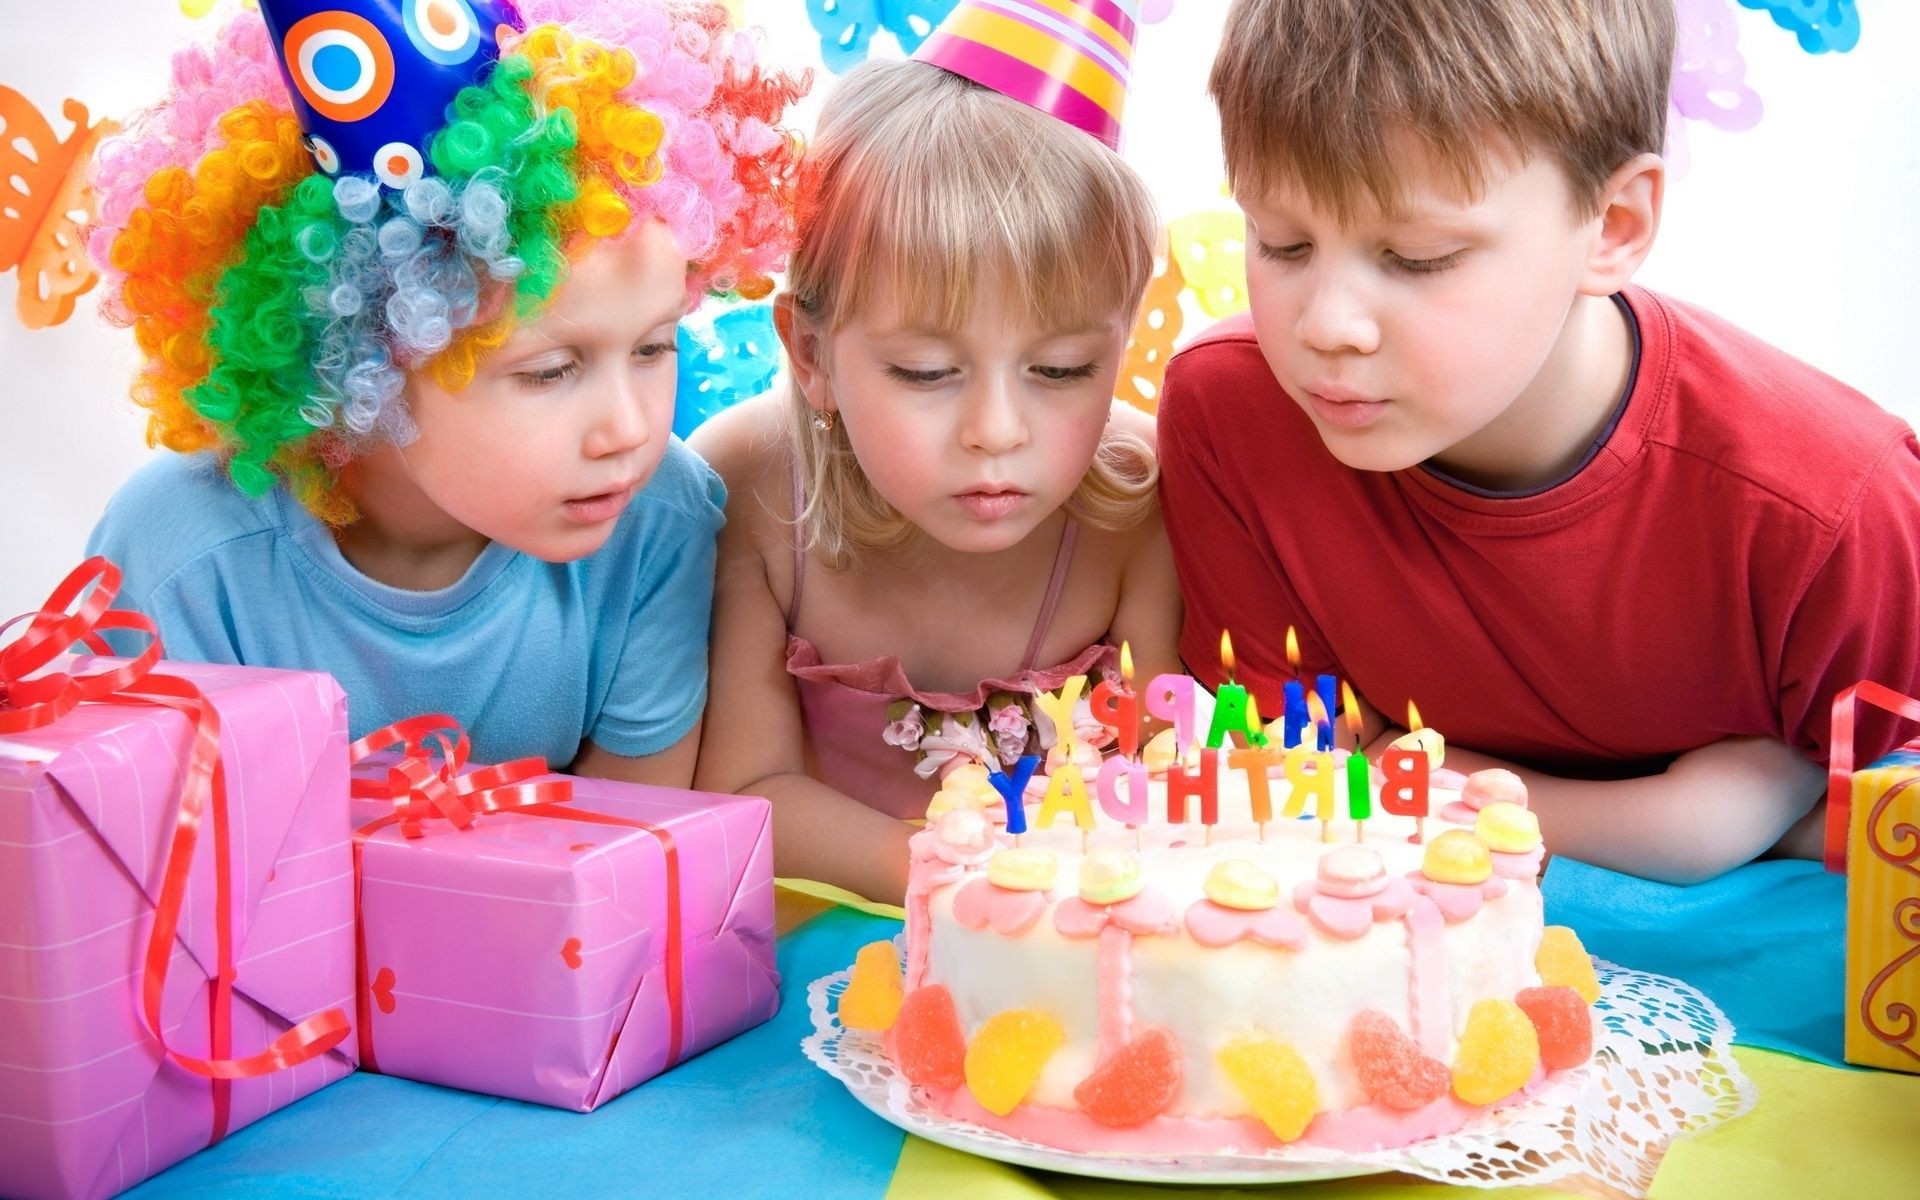 дети ребенок день рождения удовольствие милые мало день рождения торт праздник торт конфеты кондитерское изделие дошкольного радость счастье игрушка девушка семья рождество участник детский сад подарок